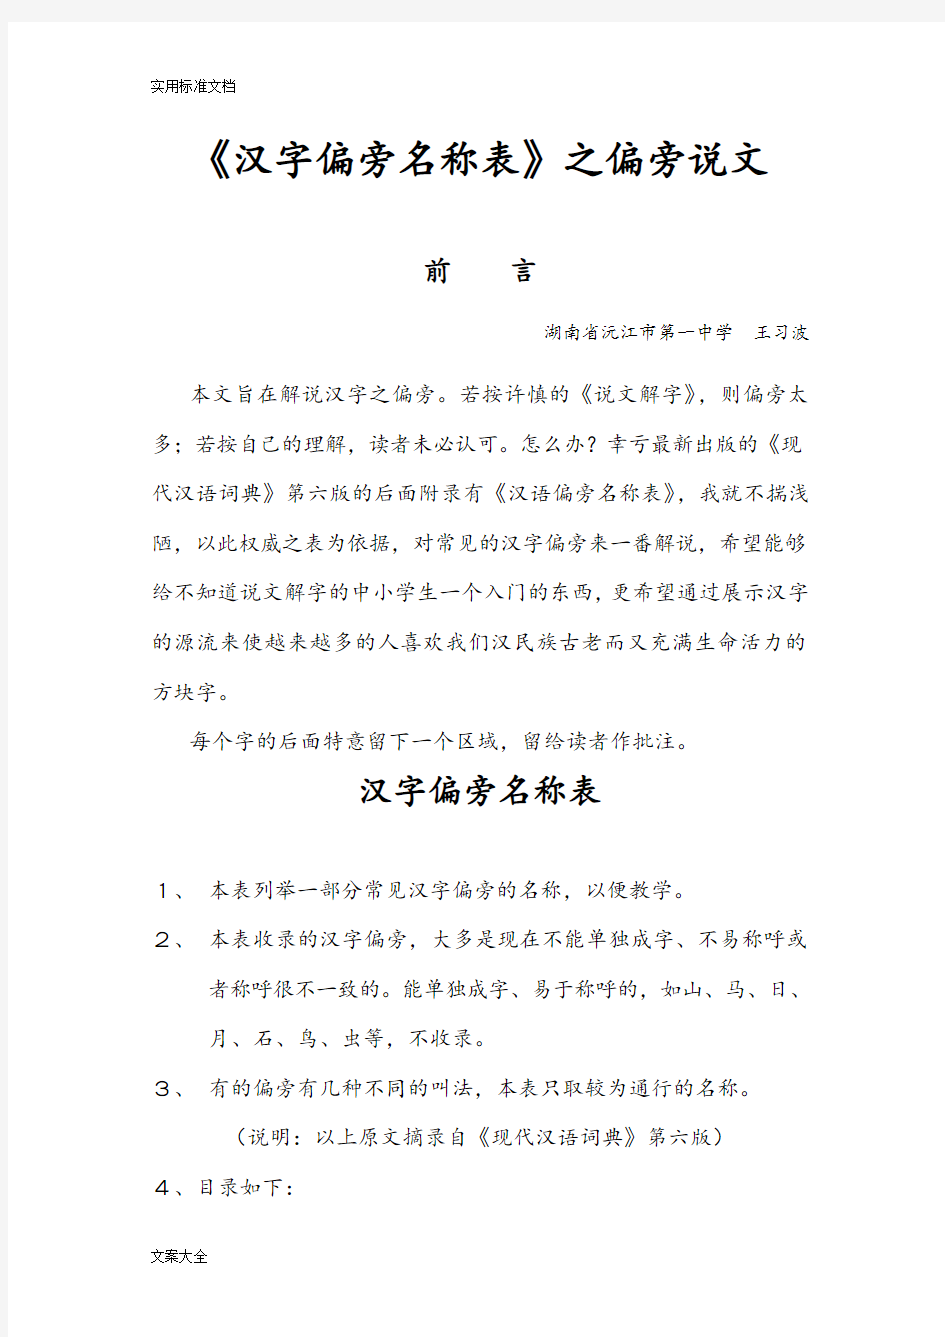 《现代汉语词典》第六版《汉字偏旁名称表》之偏旁说文